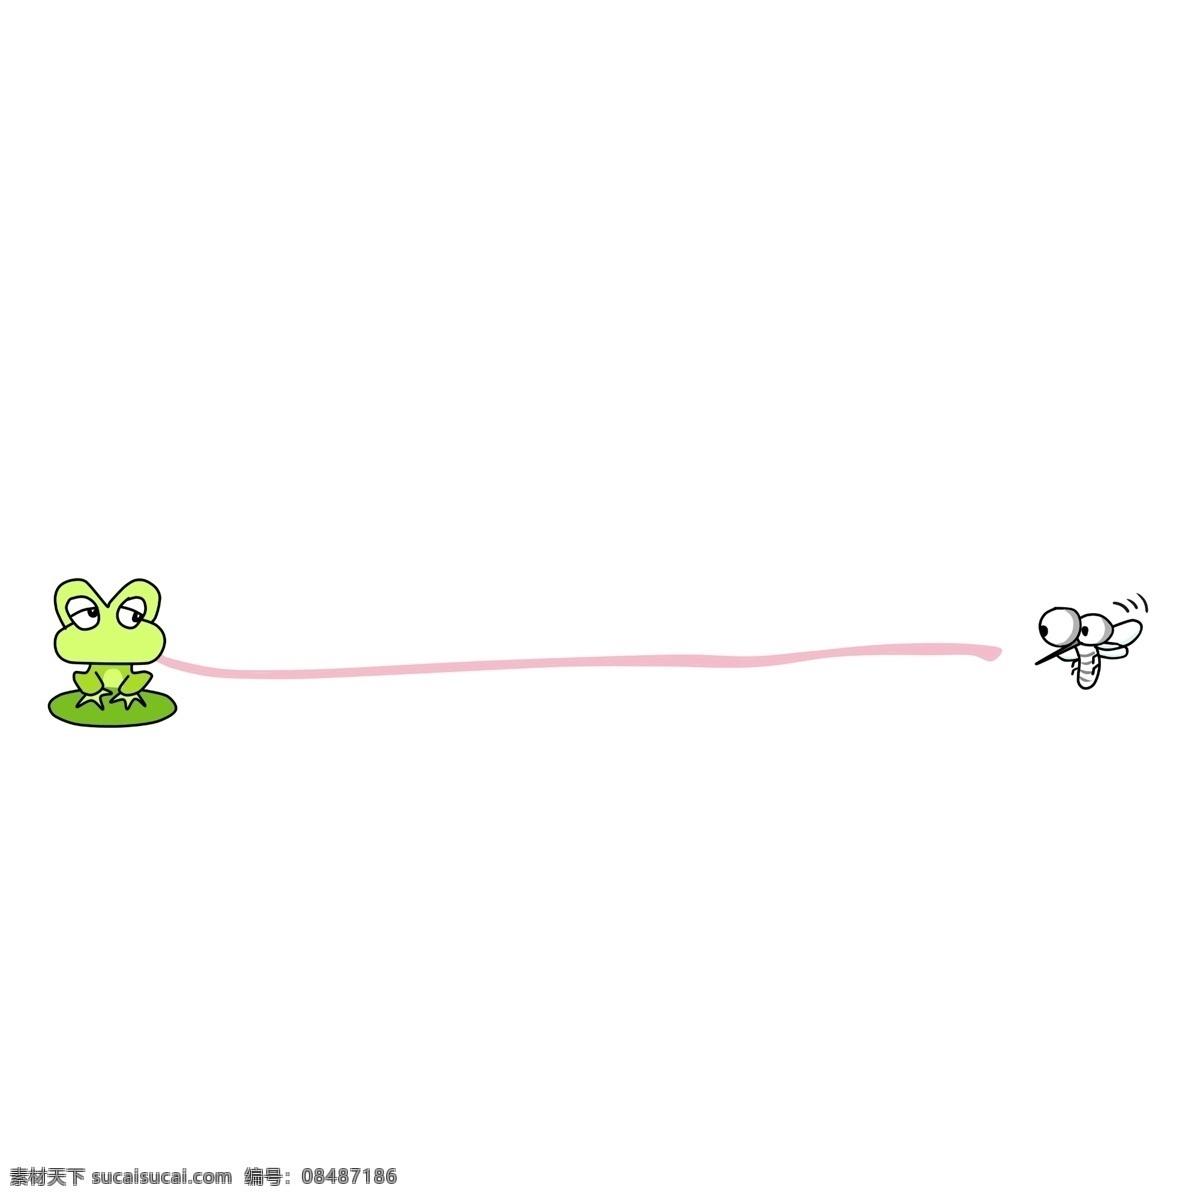 手绘 蓝色 青蛙 分割线 可爱的青蛙 粉色的分割线 边框 动物 卡通插画 手绘插画 害怕的蚊子